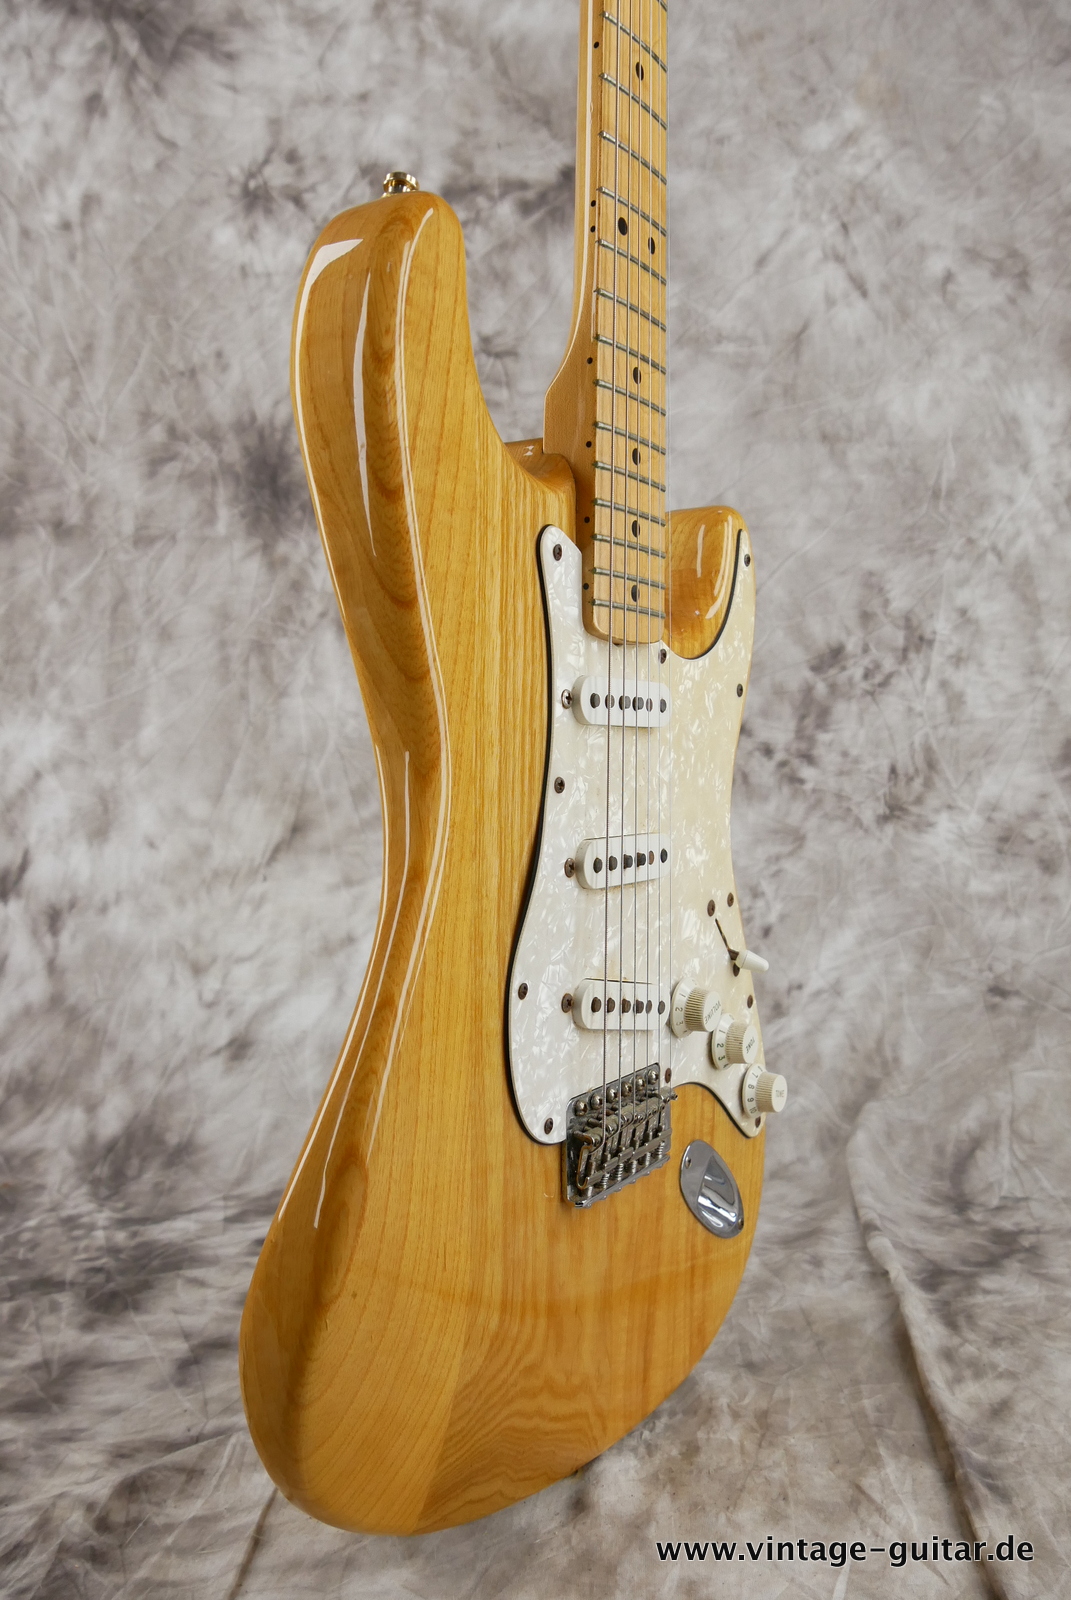 Fender_Stratocaster_70s_reissue_maple_neck_1999_Mexico-005.JPG